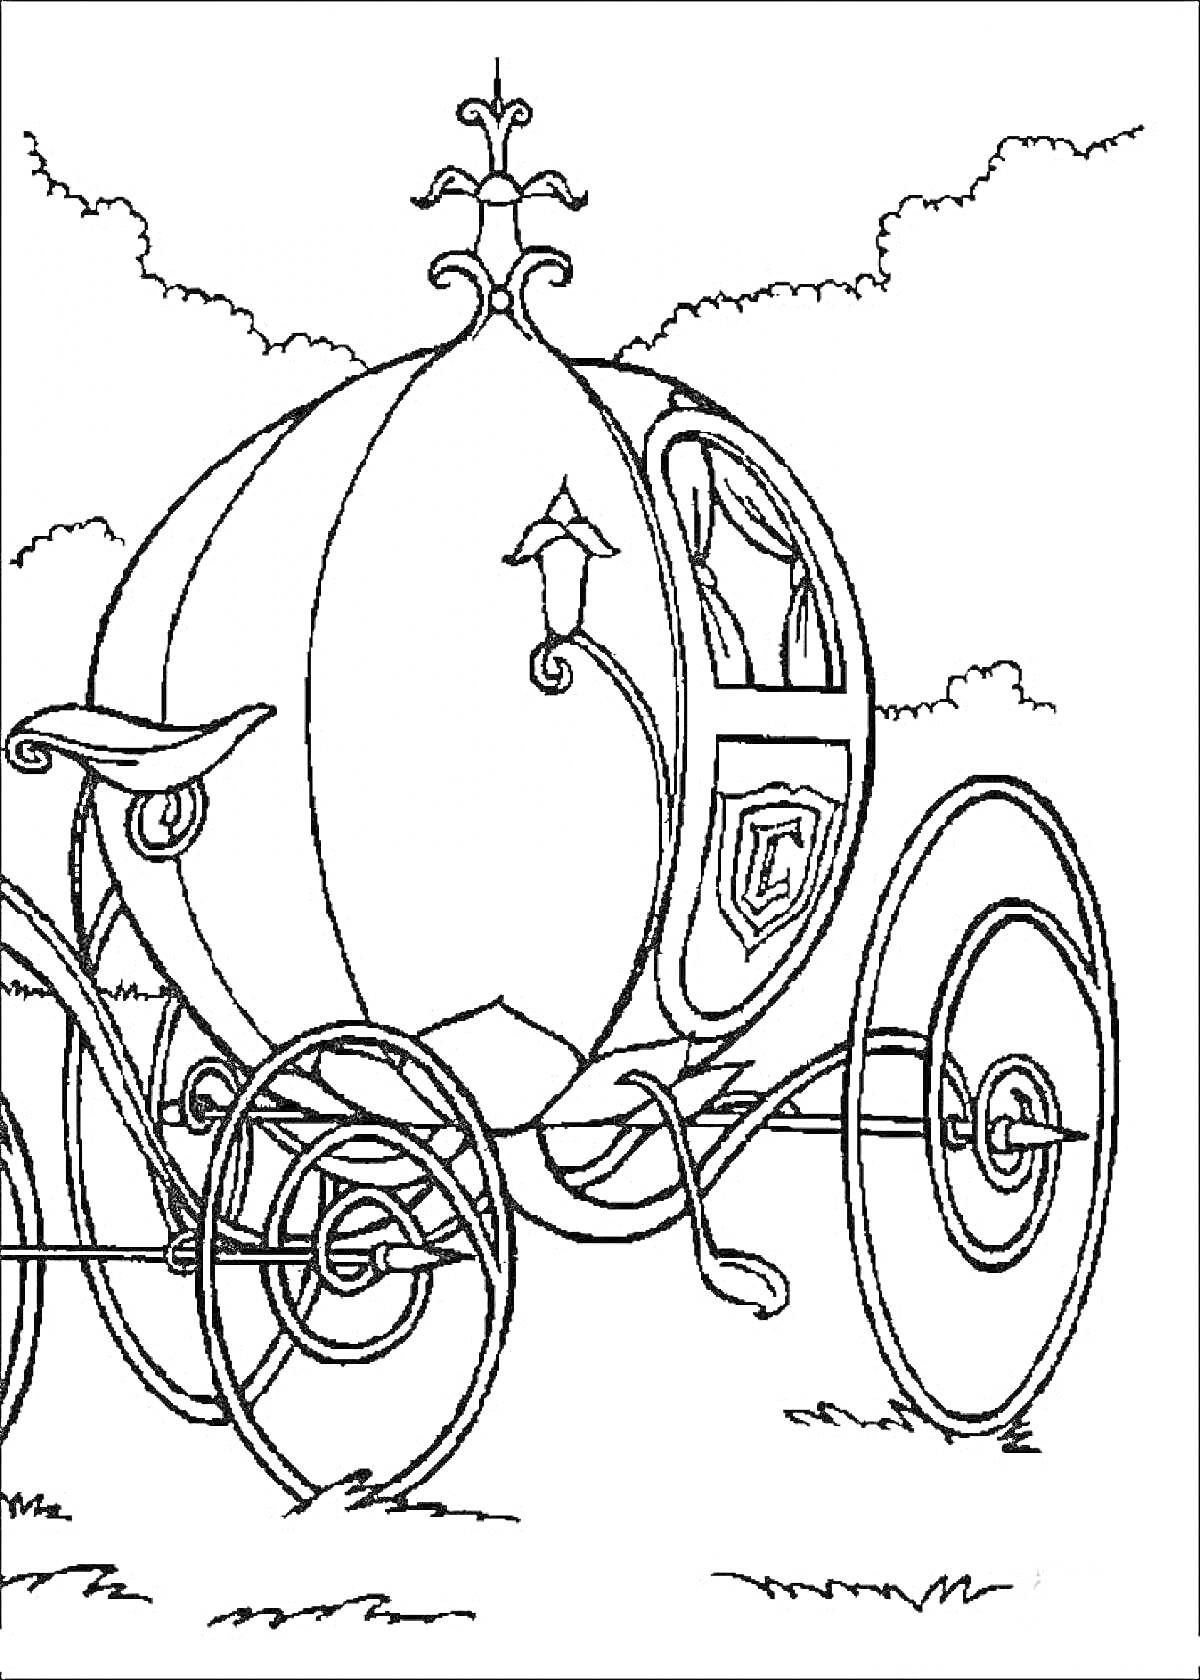 РаскраскаКарета в форме тыквы с фонарем, колёсами и декоративными элементами, на фоне облаков и травы